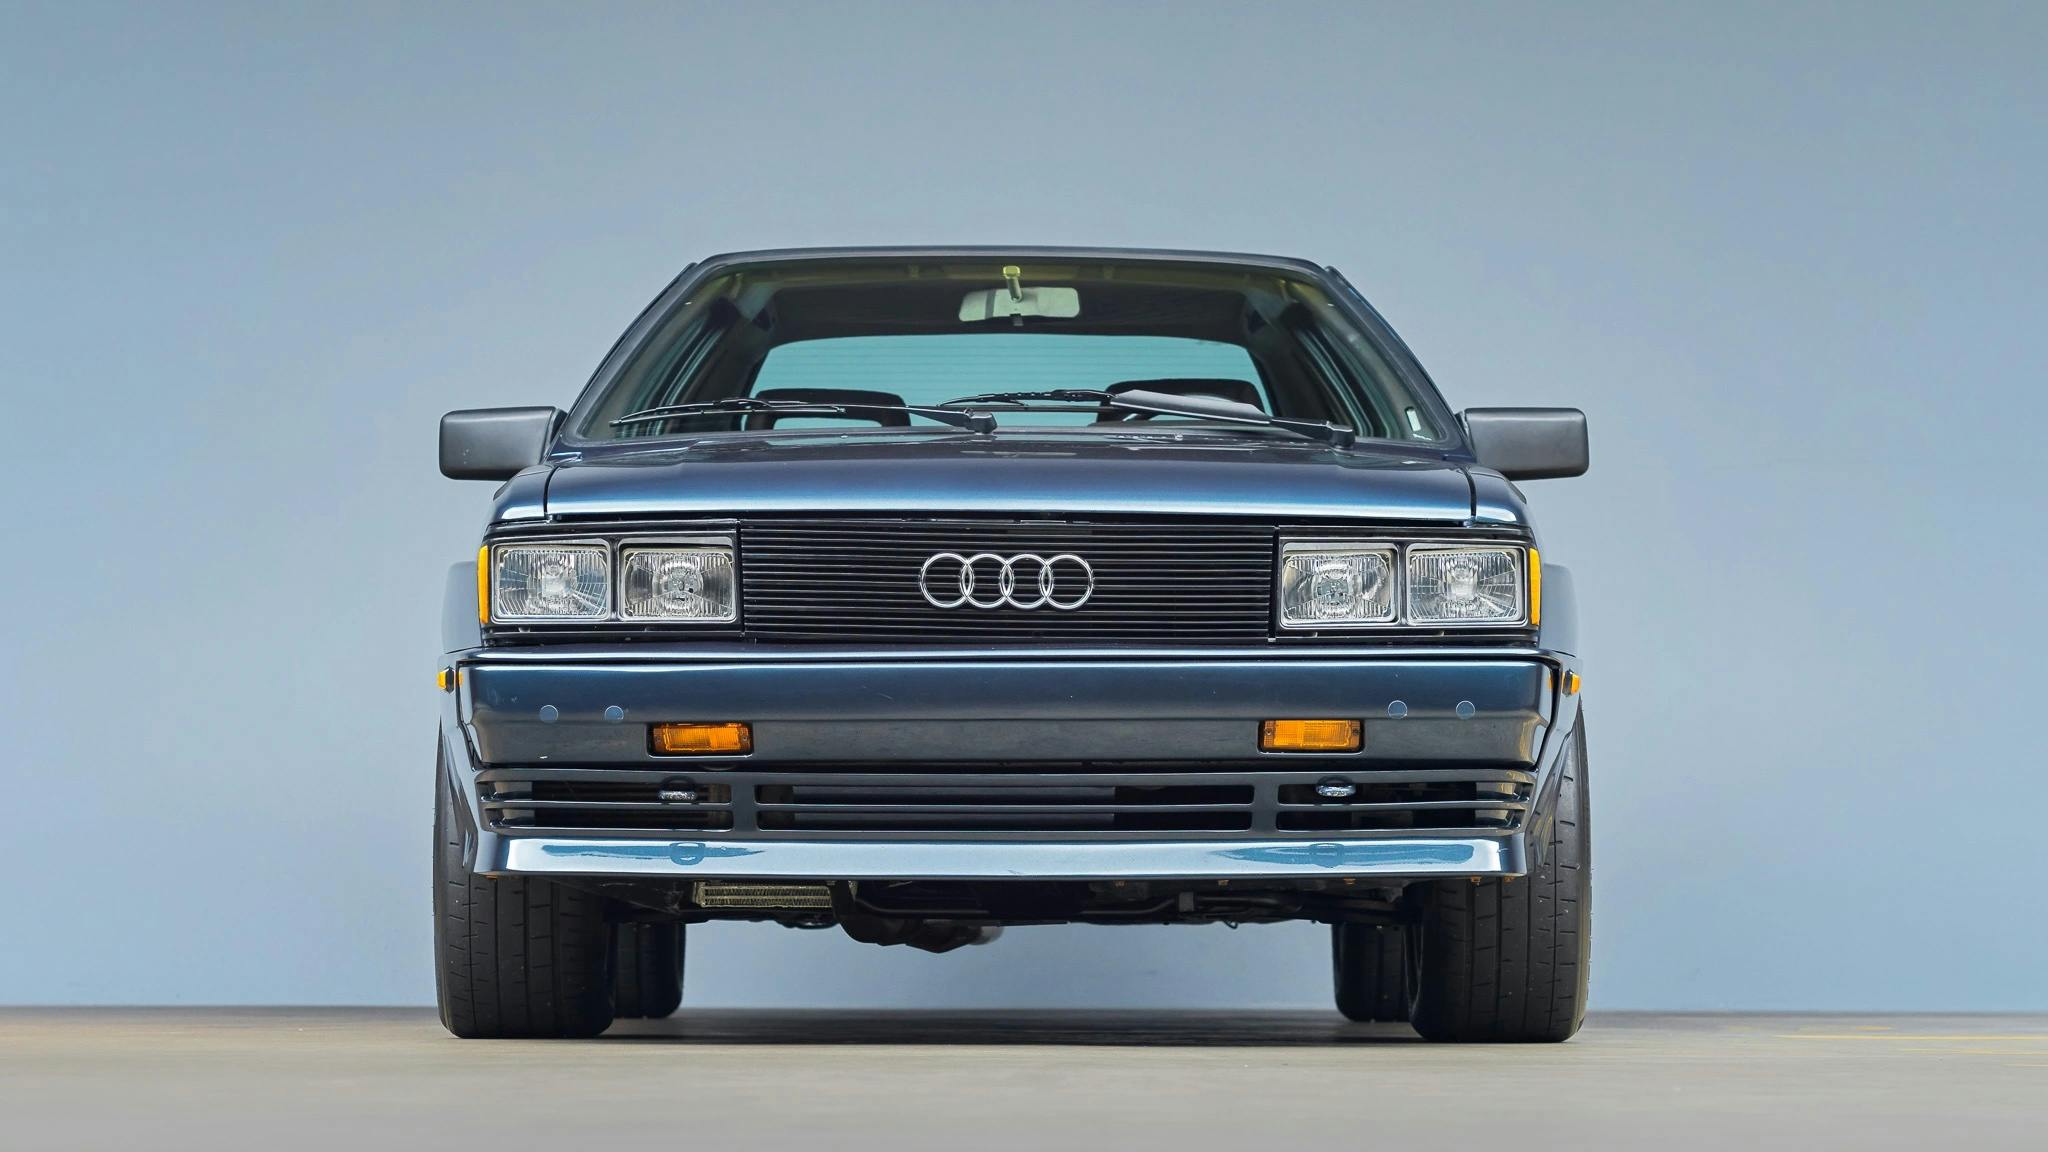 1983 Audi Ur-quattro front